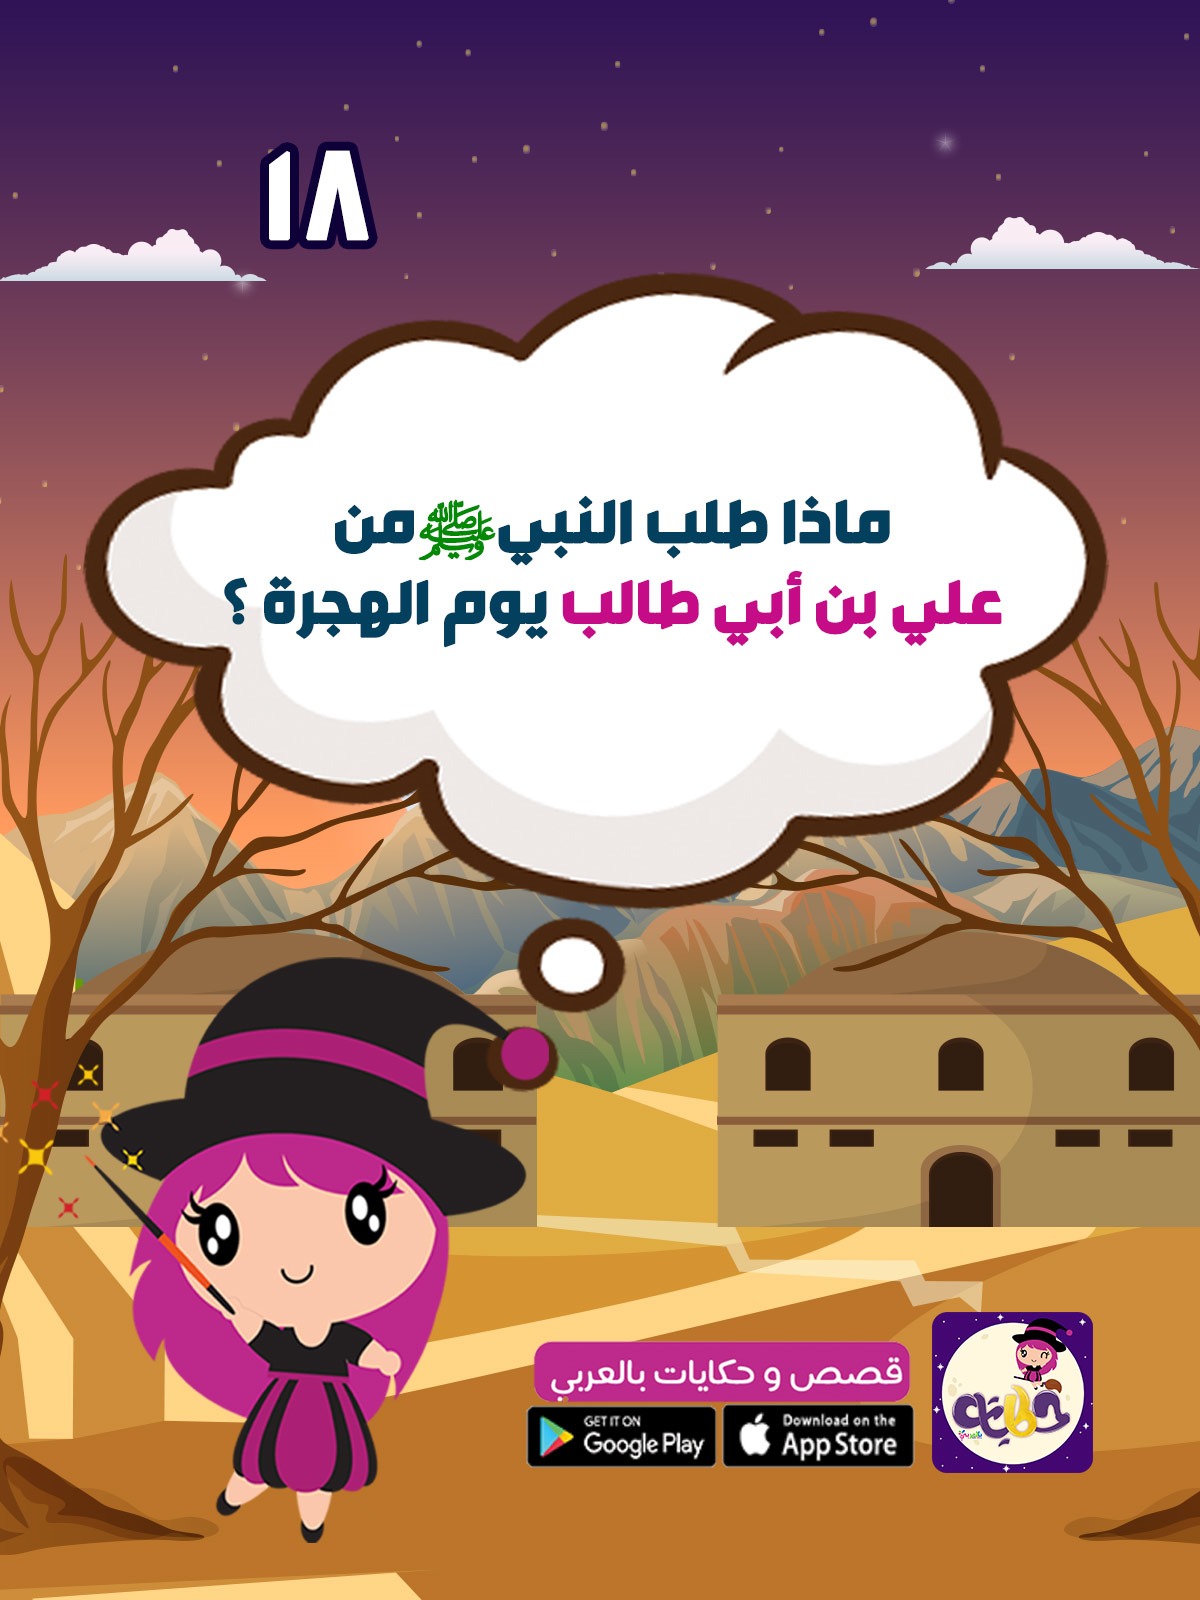 علي بن أبي طالب قصص سلسلة أشبال حول الرسول للاطفال بتطبيق قصص وحكايات بالعربي